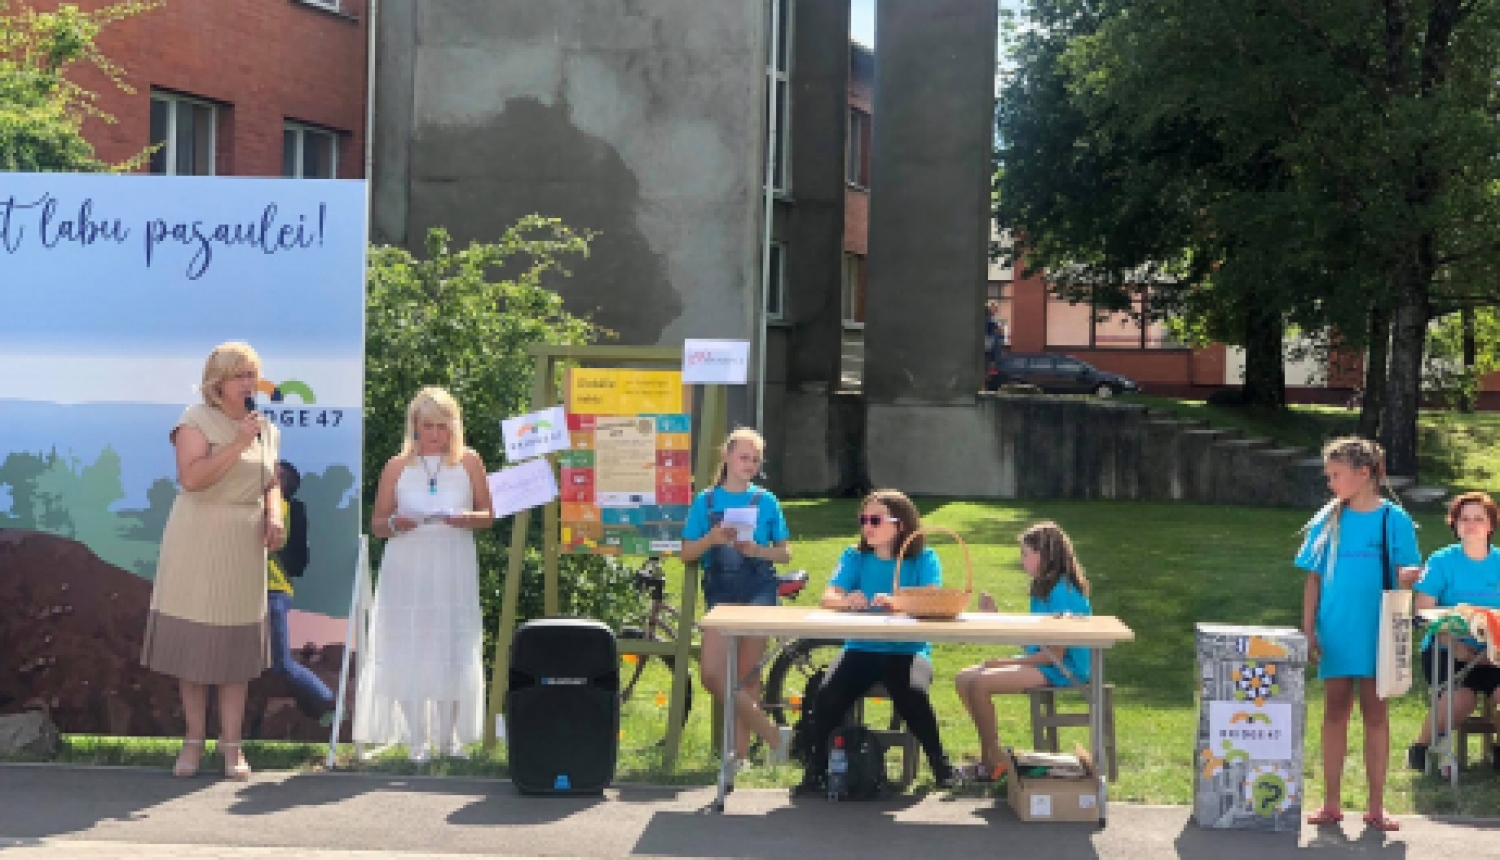 Jēkabpils pilsētas domes priekšsēdētāja vietniece Kristīne Ozola atklāja akciju "Iegriezt pasauli kopā!"